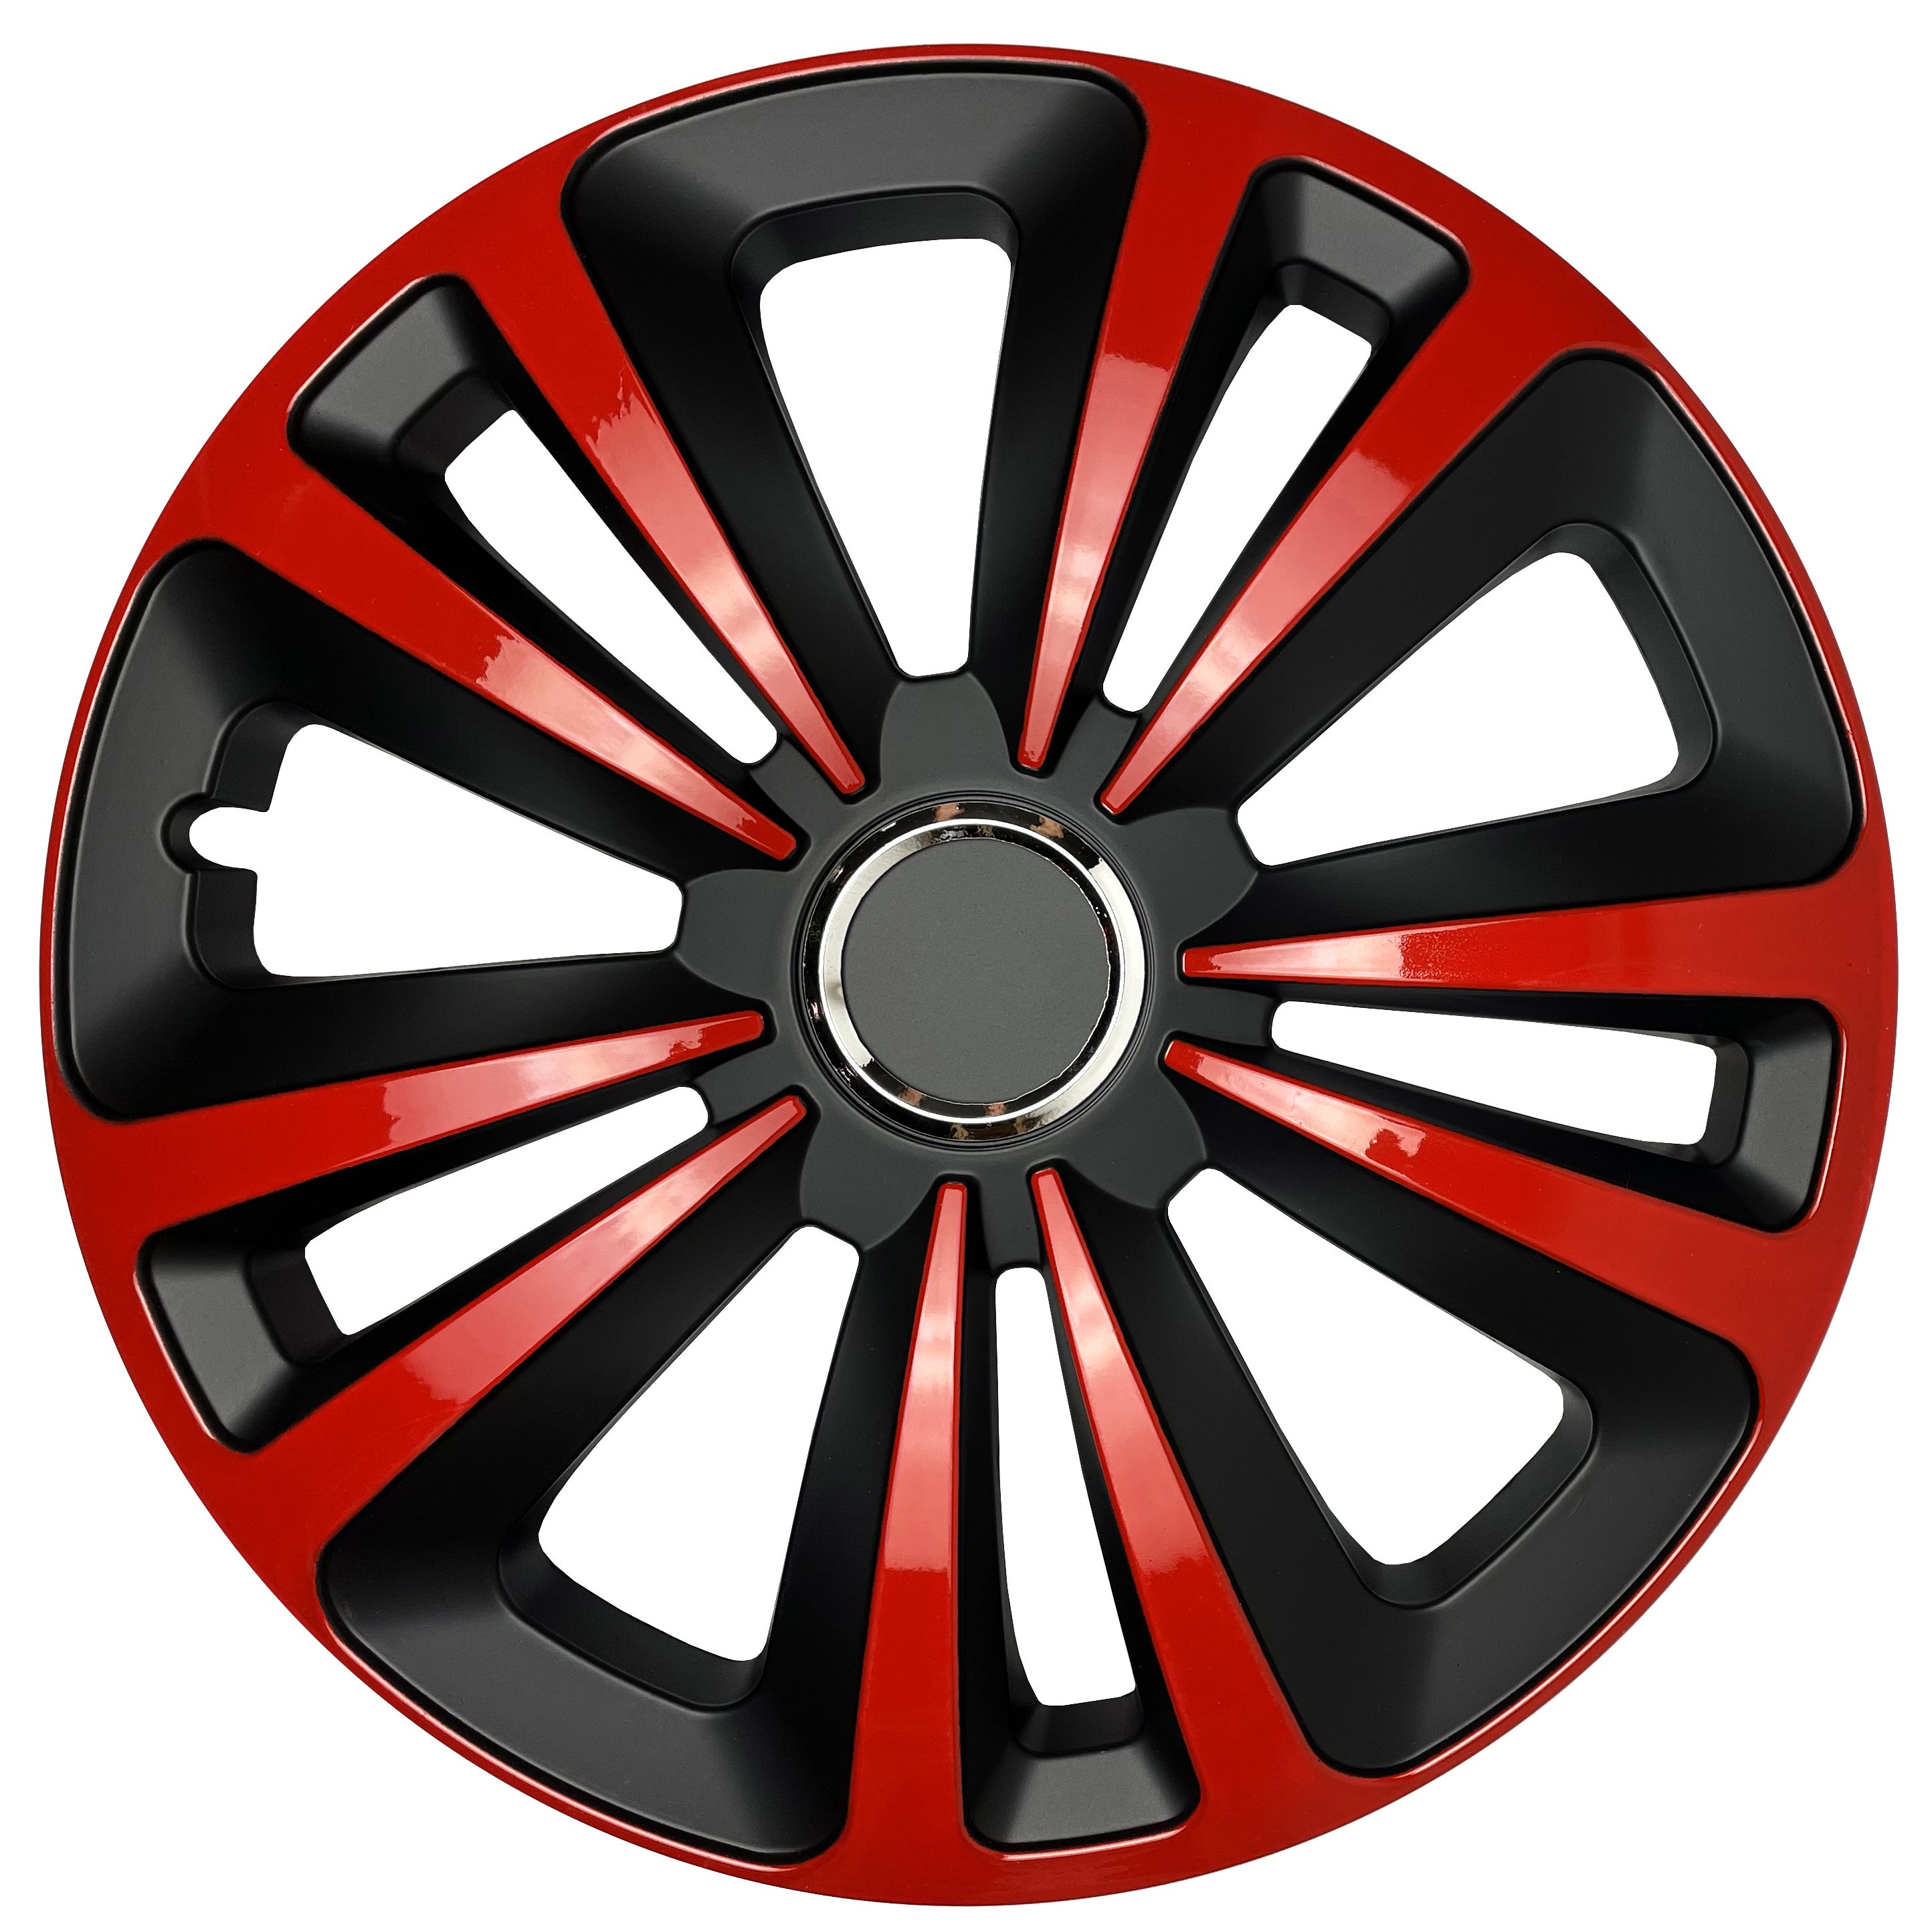 Автомобильные колпаки на диски Терра микс красный r13. Колпаки на диски Терра микс белый r14. Колпаки Терра микс. Колпаки на колеса r14. Колпаки дона